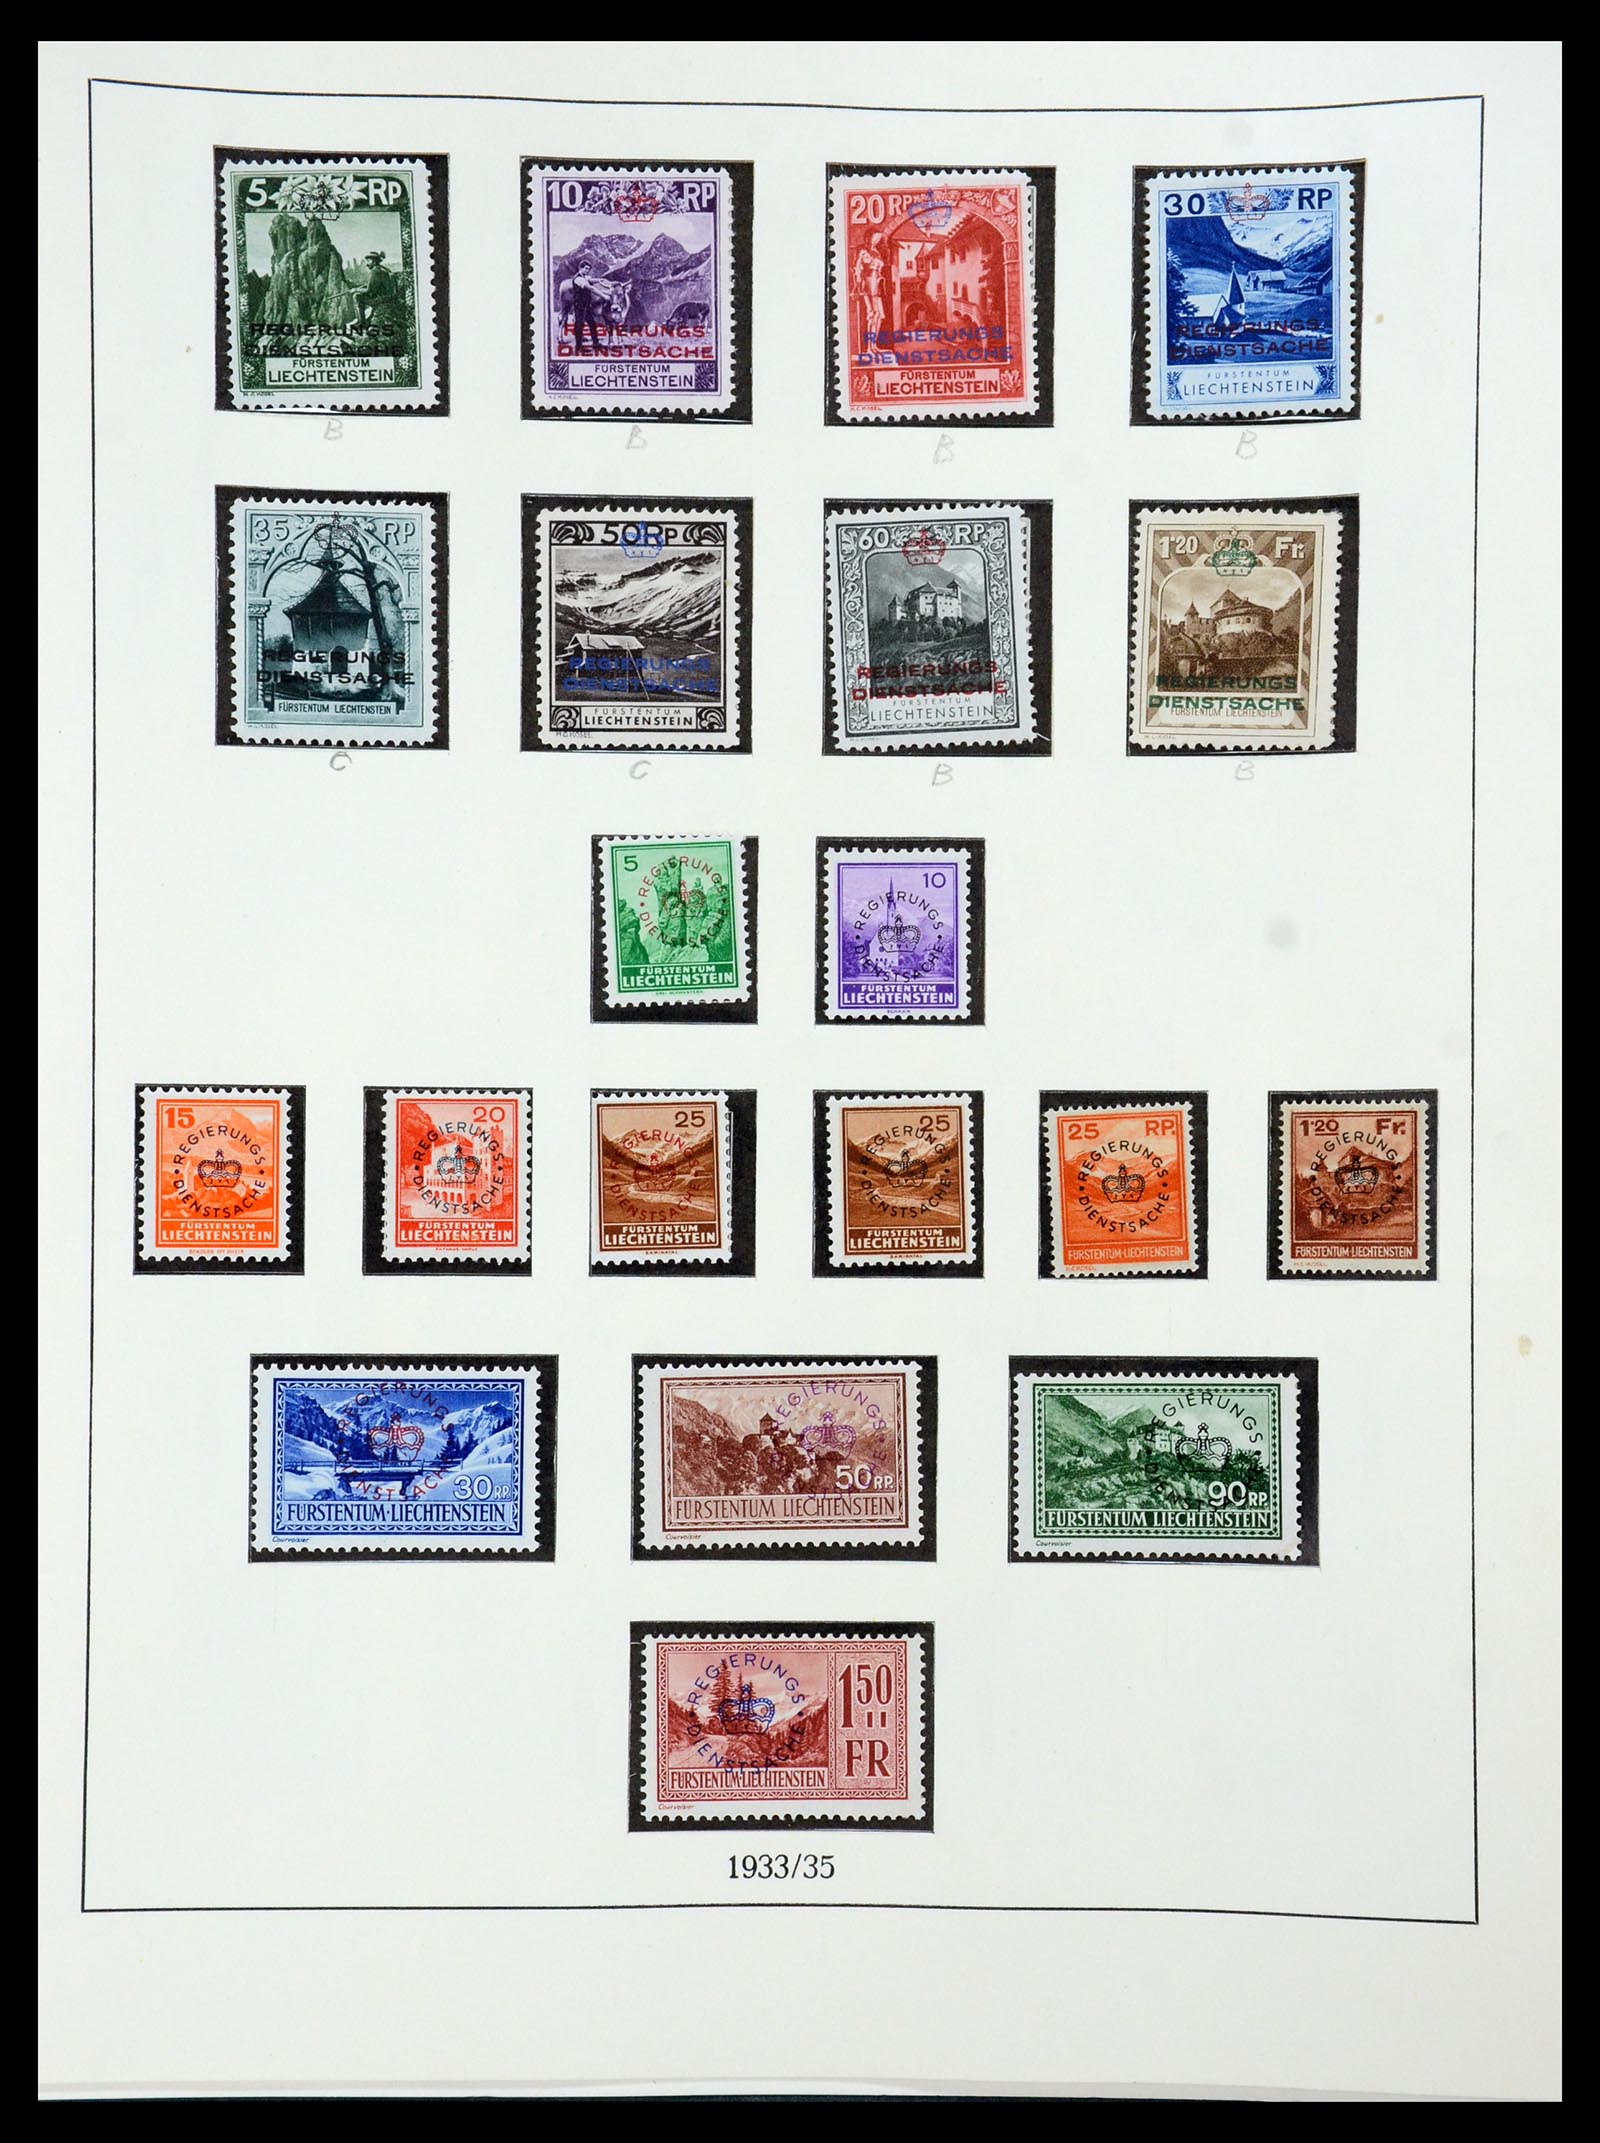 36358 053 - Stamp collection 36358 Liechtenstein 1912-1971.